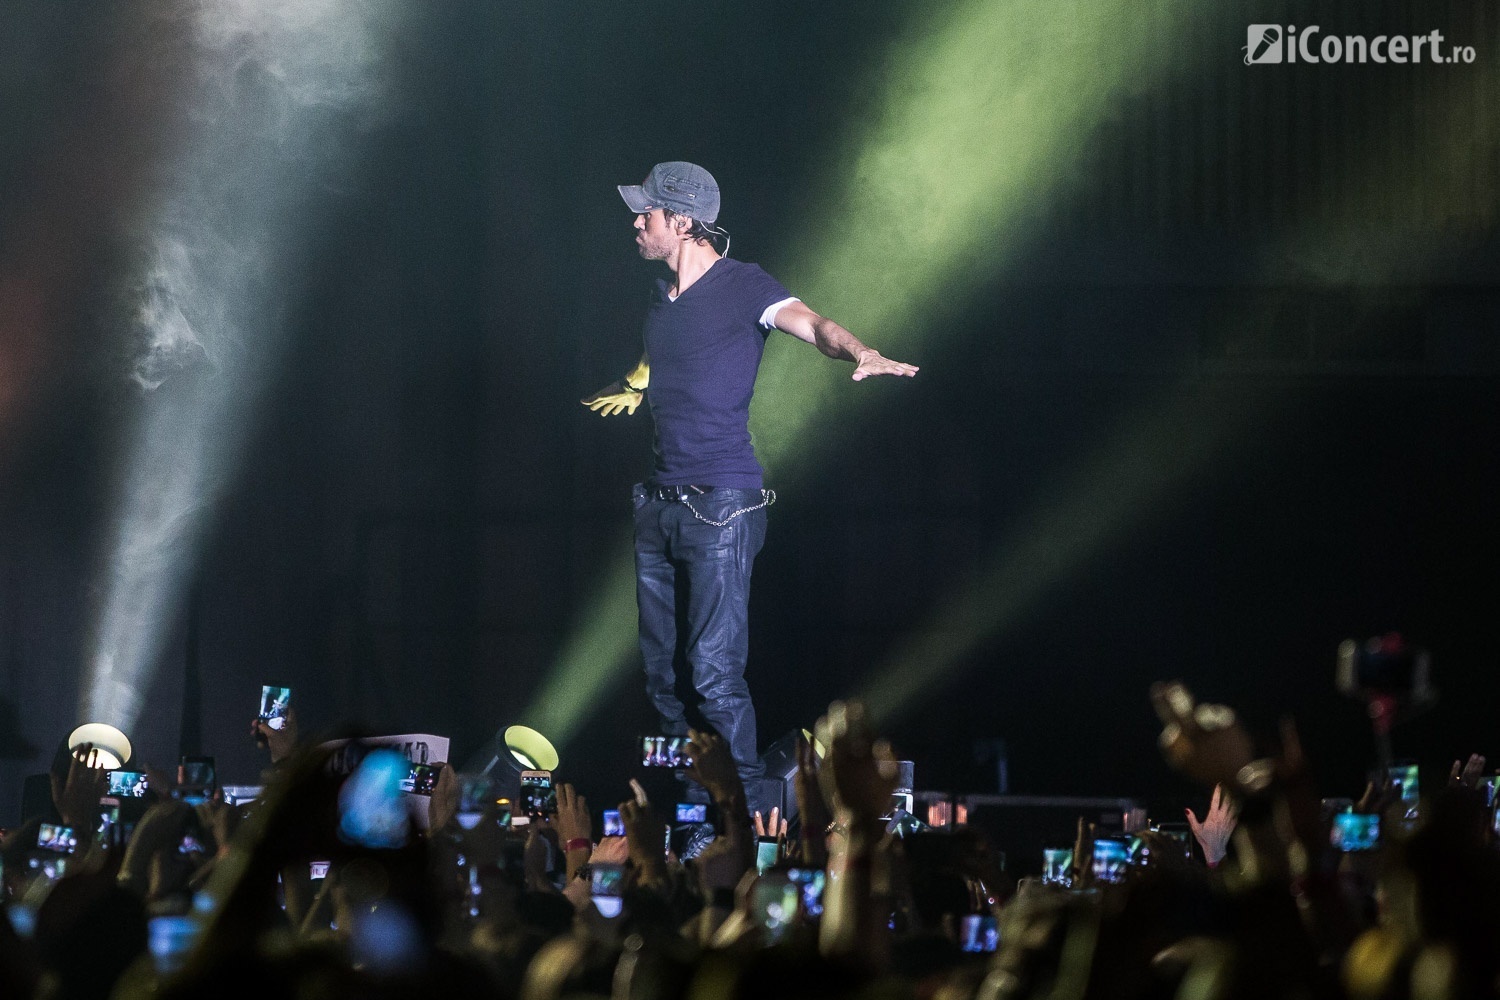 Recenzia concertului Enrique Iglesias la București - Foto: Paul Voicu / iConcert.ro